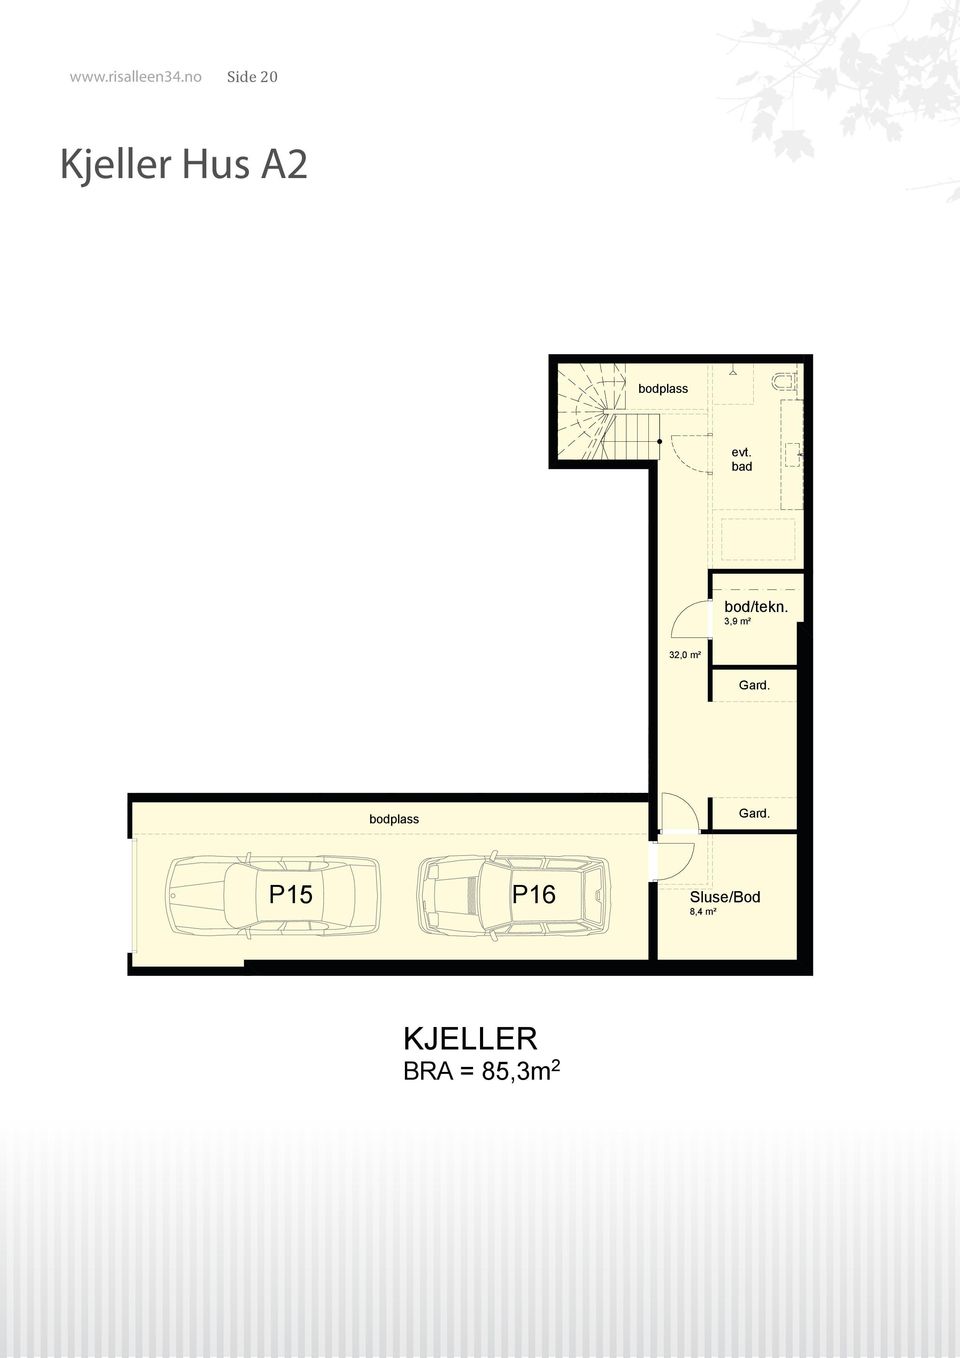 2,5 m² Bod 2,2 m² 3,9 m² bodplass 28,7m2 (evt.